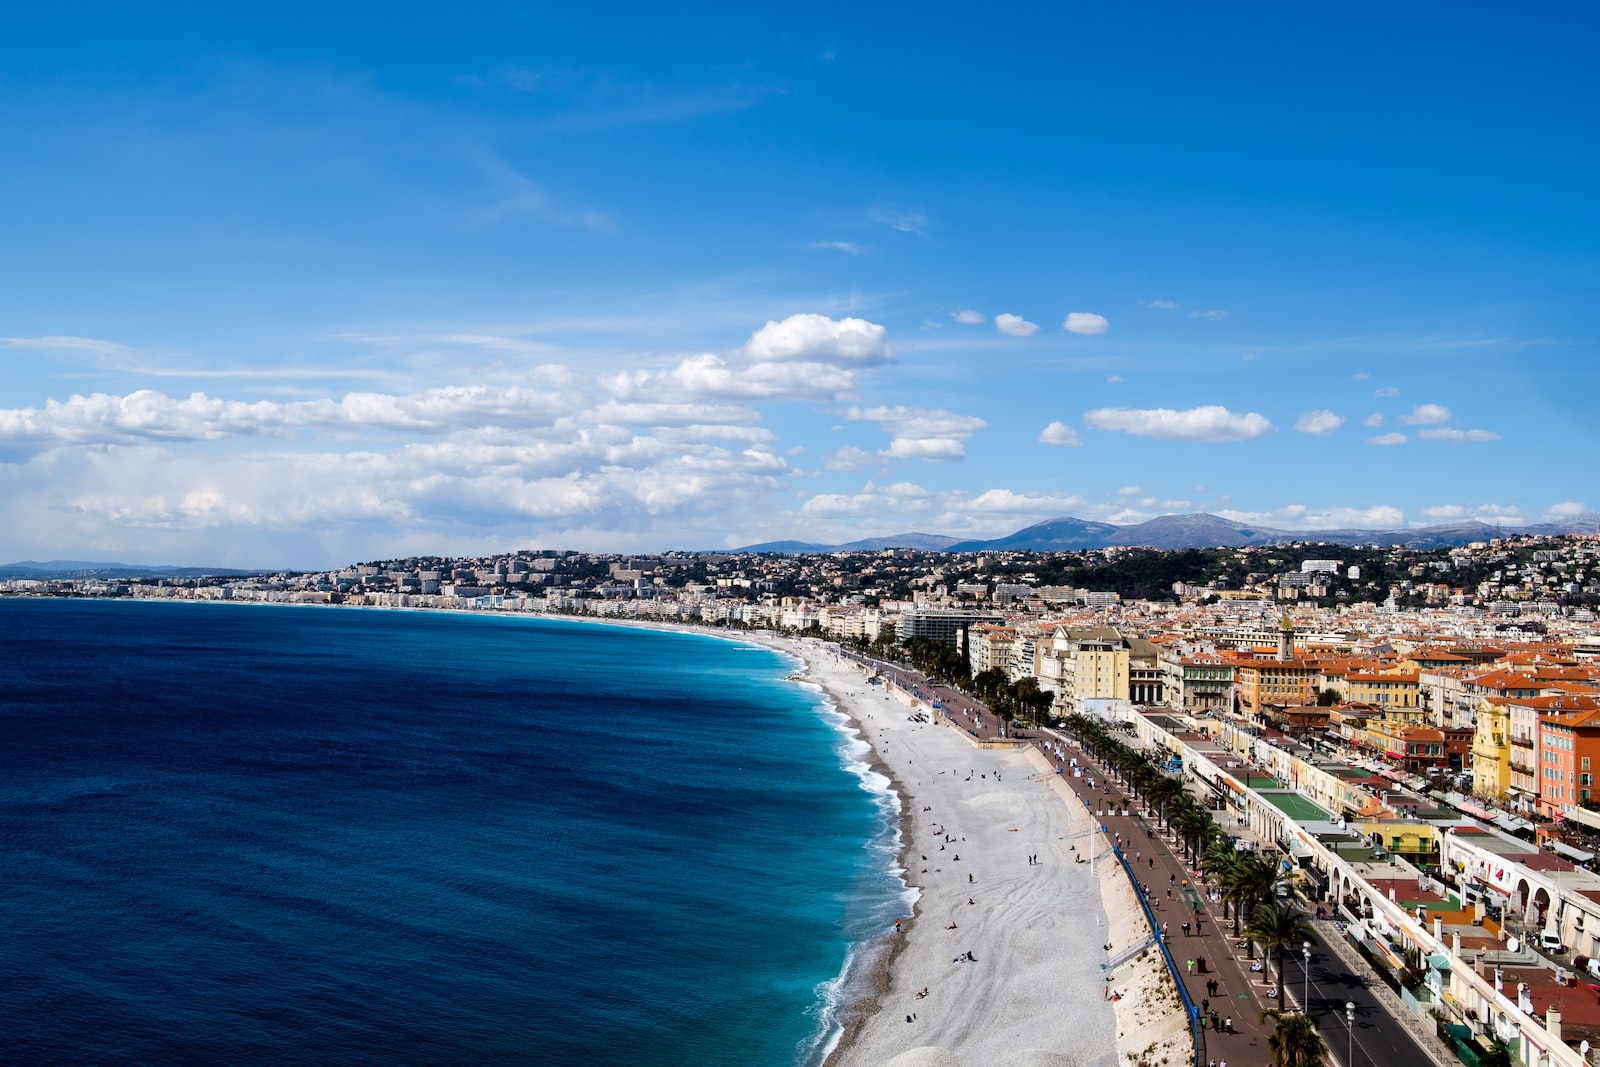 Comment bien choisir son logement de vacances sur la Côte d’Azur ?